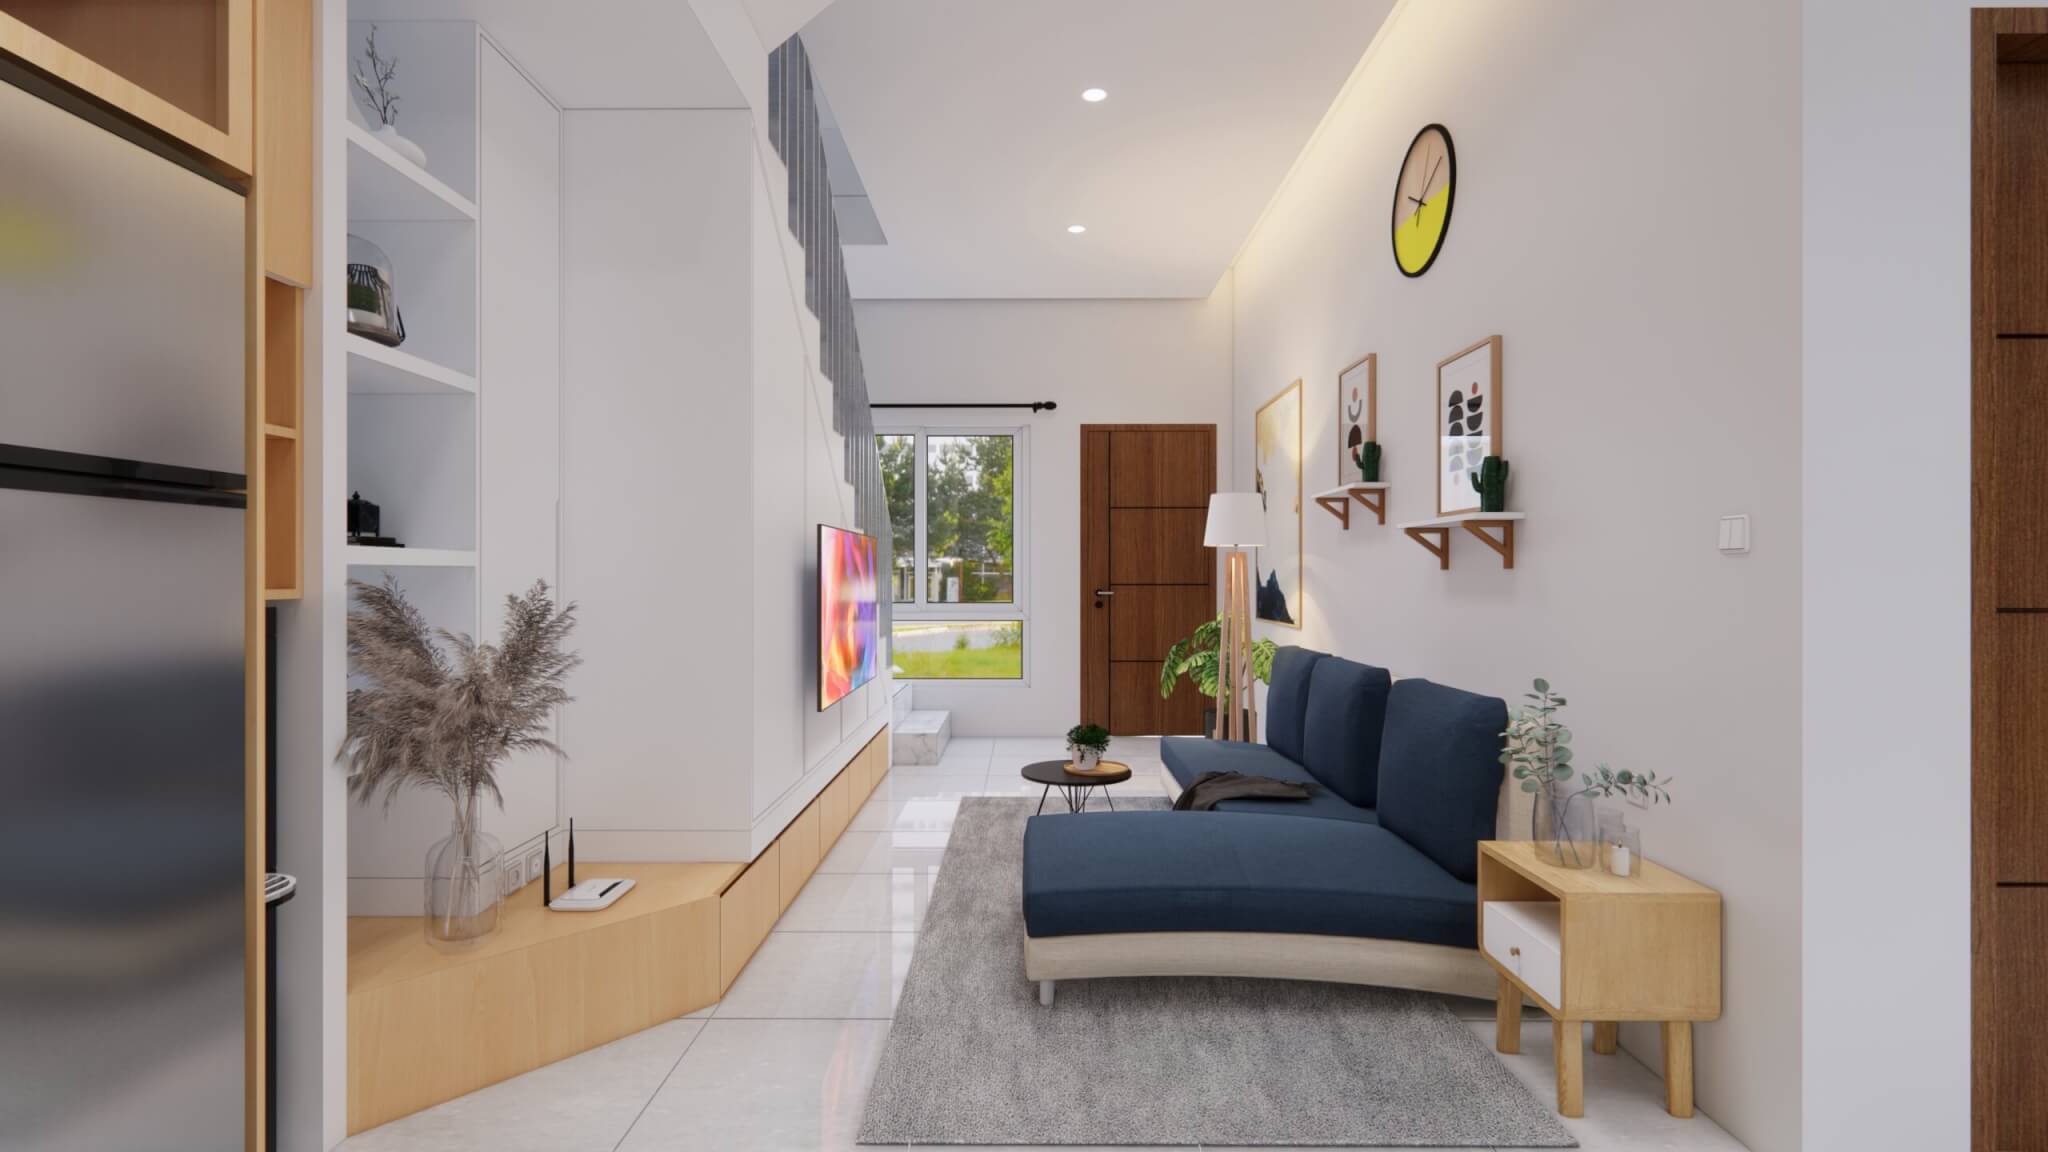 interior-ruang-keluarga-gaya-minimalis